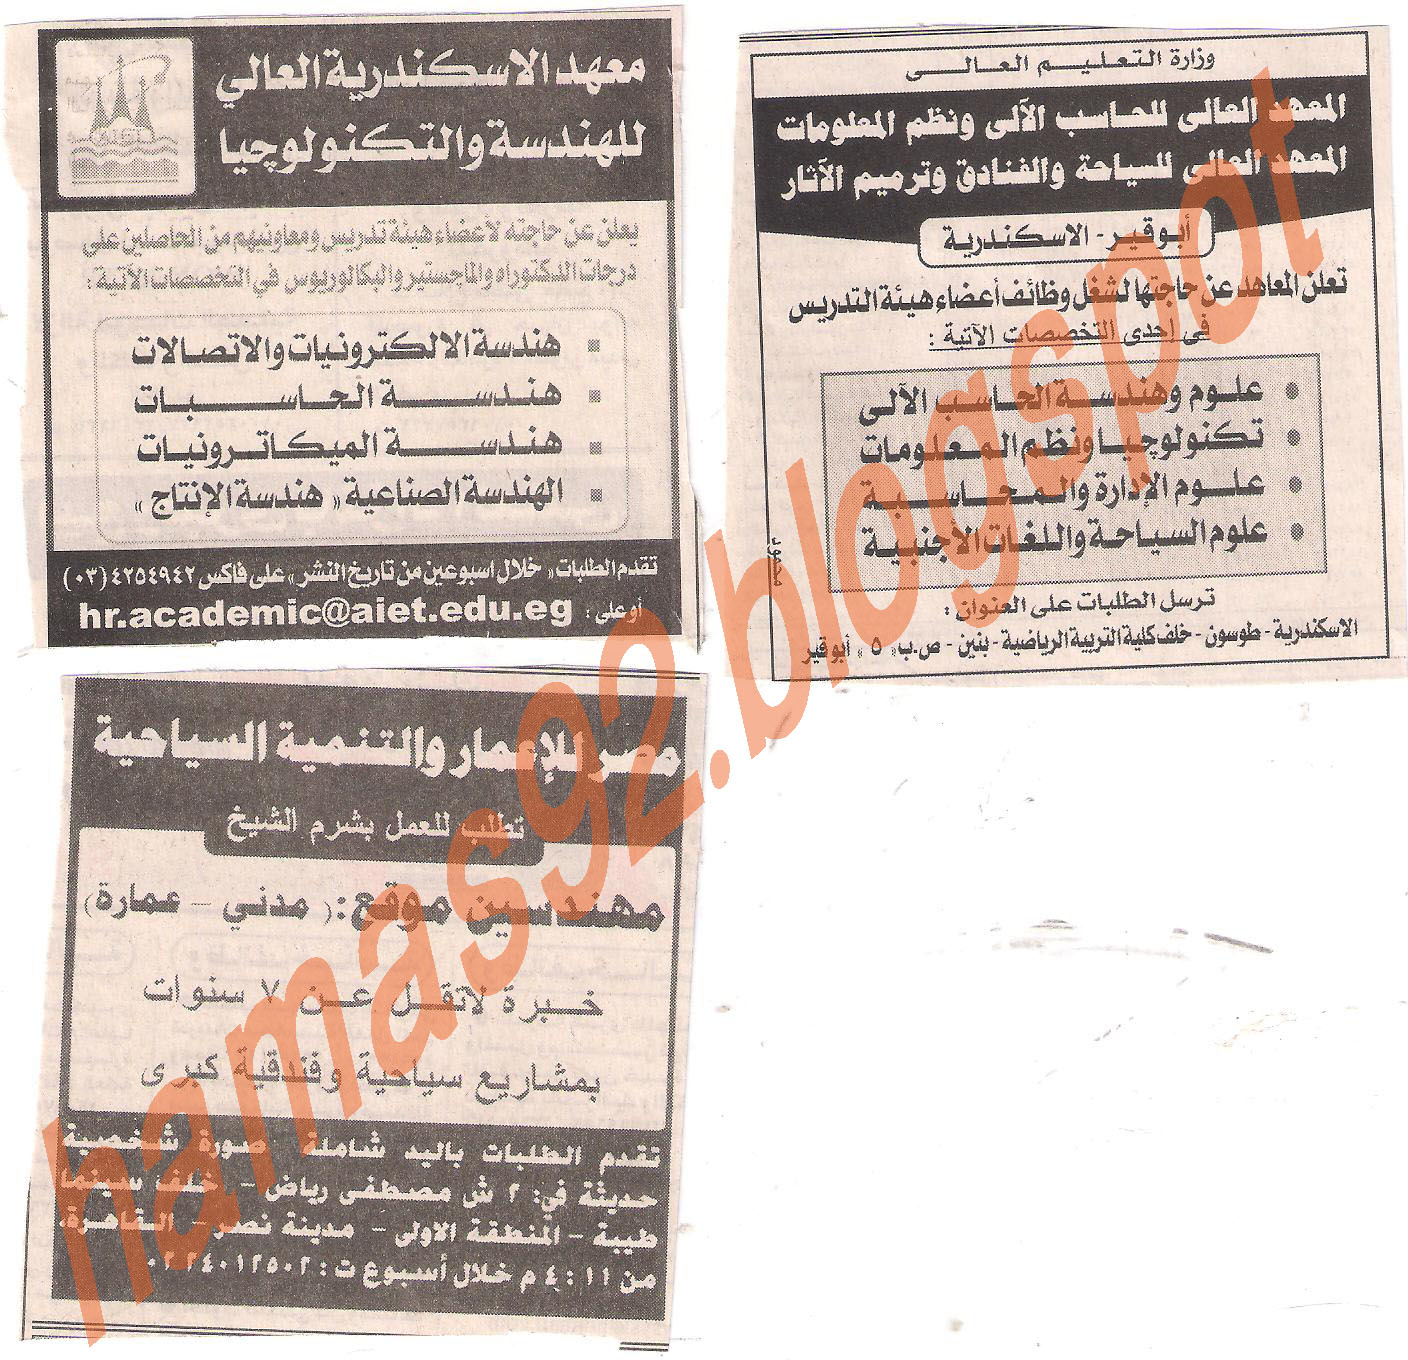 وظائف جريدة الاهرام الجمعة 24 يونيو 2011 - الجزء الثالث Picture+015